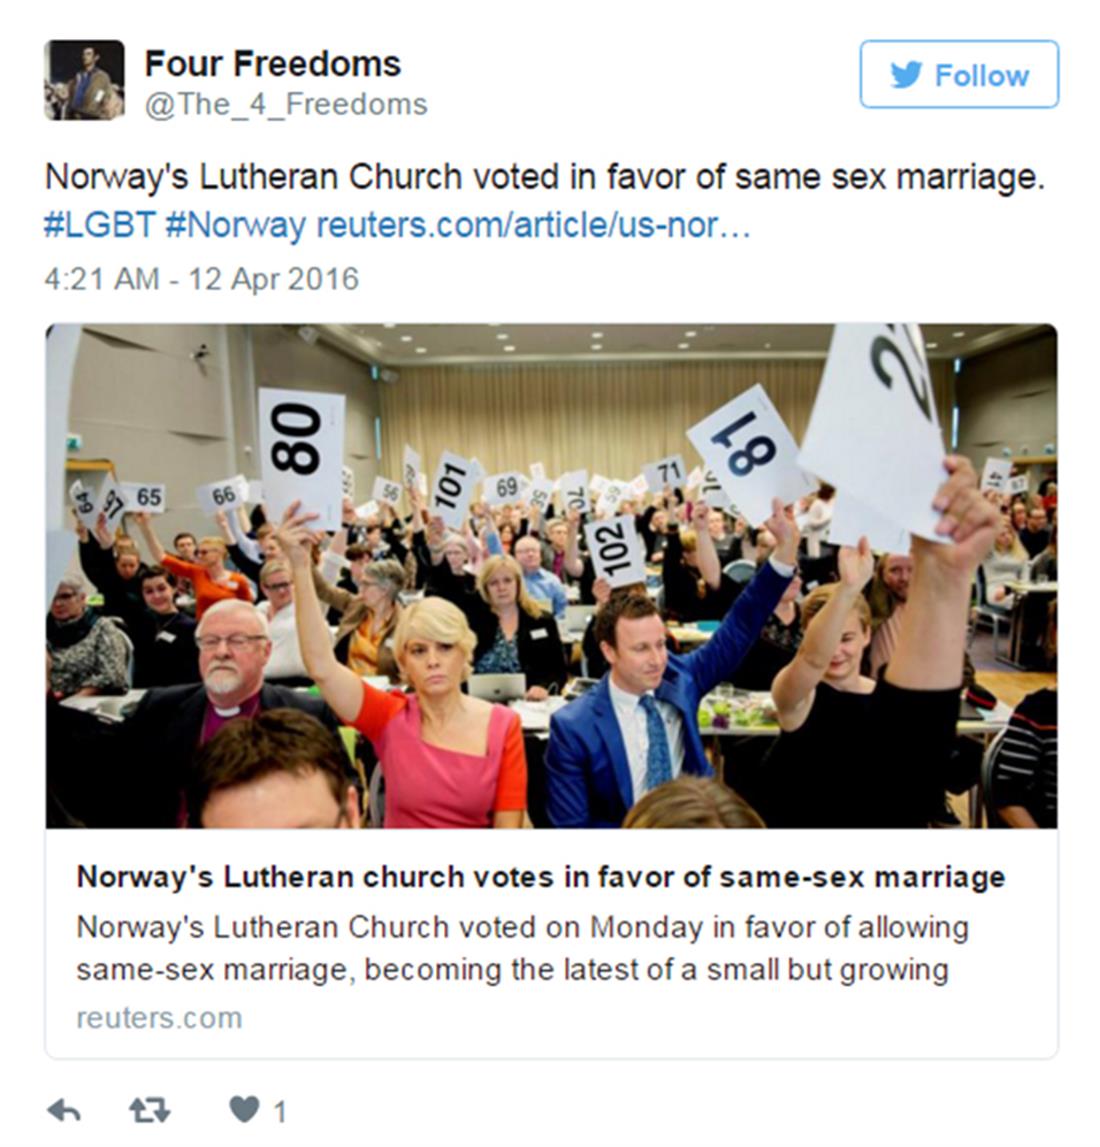 Νορβηγία - εκκλησία - ψήφισμα - gay - γάμος - Γάμοι ομοφυλόφιλων - Λουθηρανική Εκκλησία